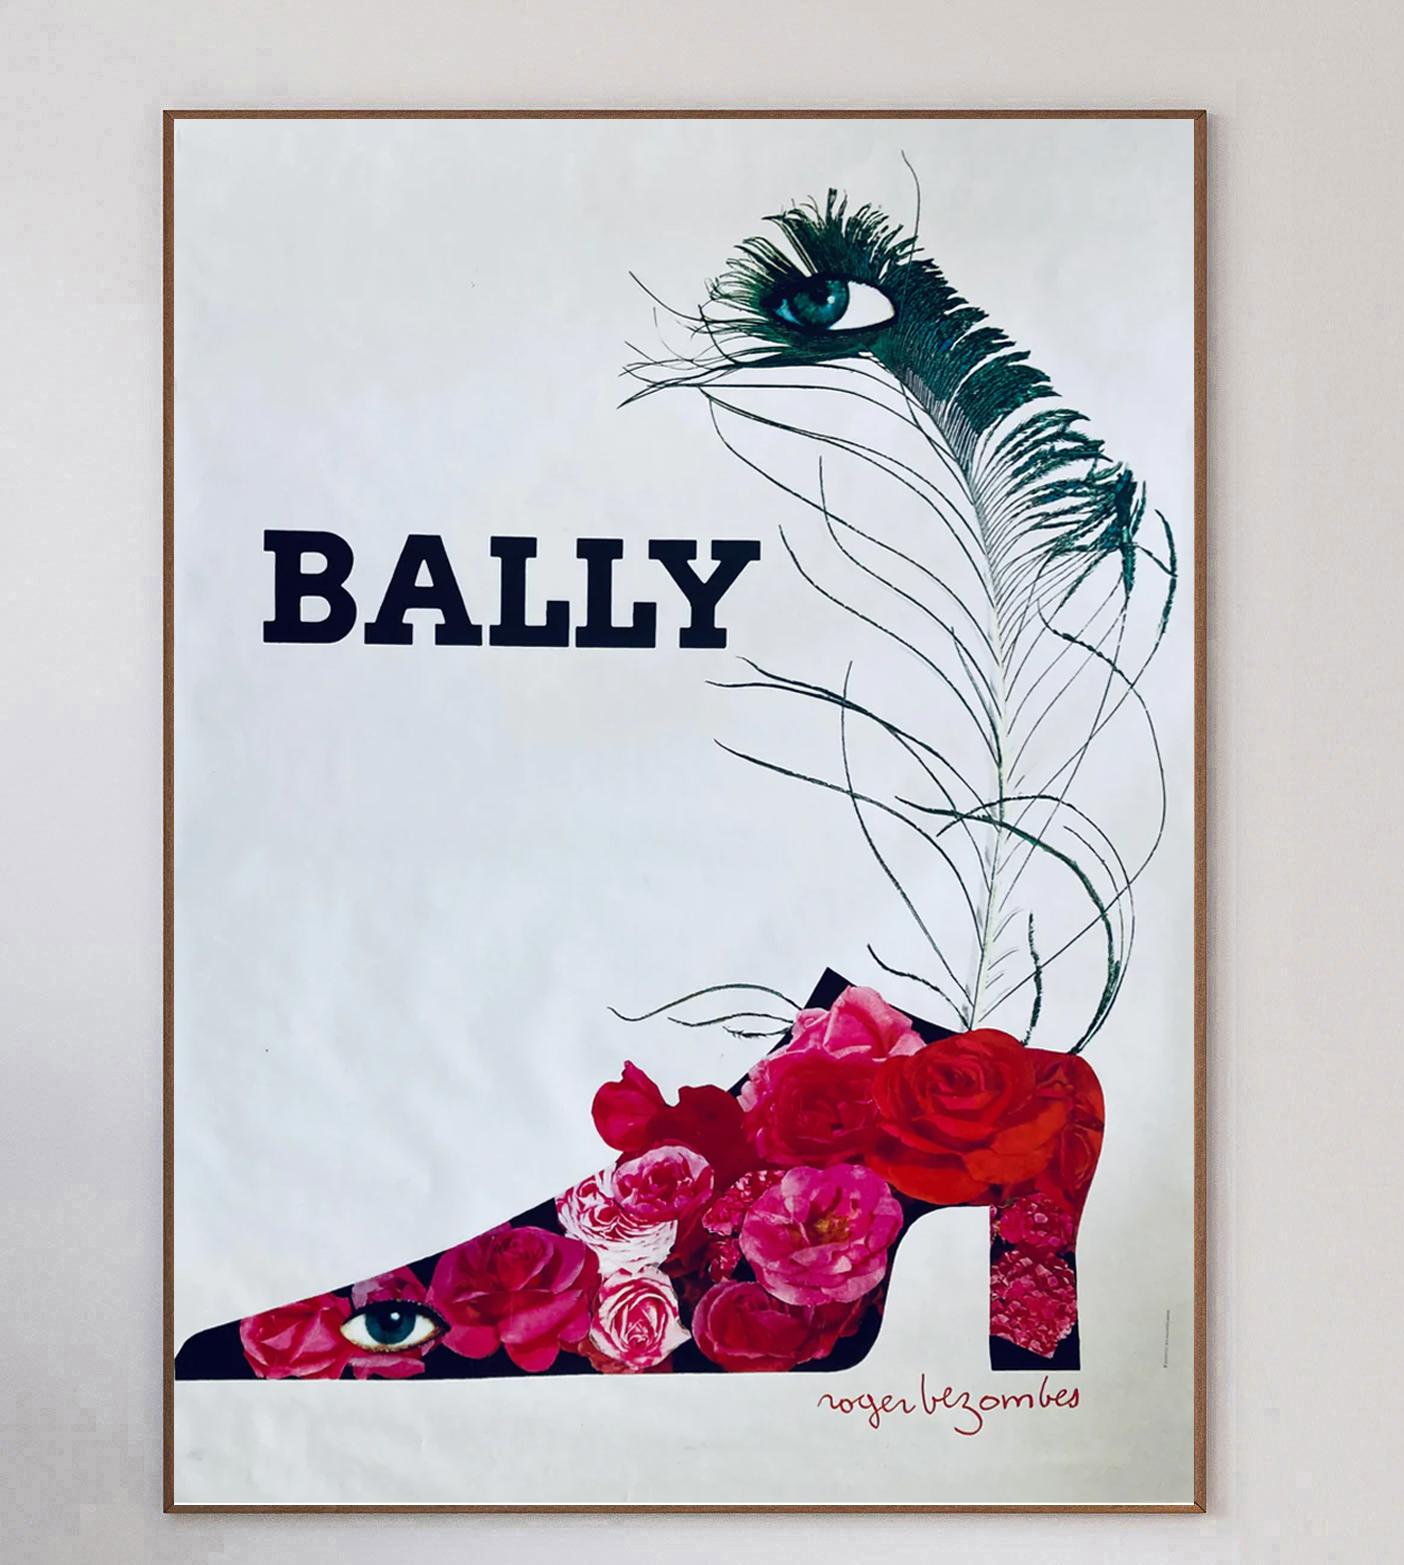 L'artiste publicitaire français Roger Bezombes a créé cette magnifique affiche extra-large pour Bally en 1980.

Le fabricant suisse de chaussures de luxe Bally a travaillé avec de nombreux artistes célèbres lors de collaborations emblématiques sur